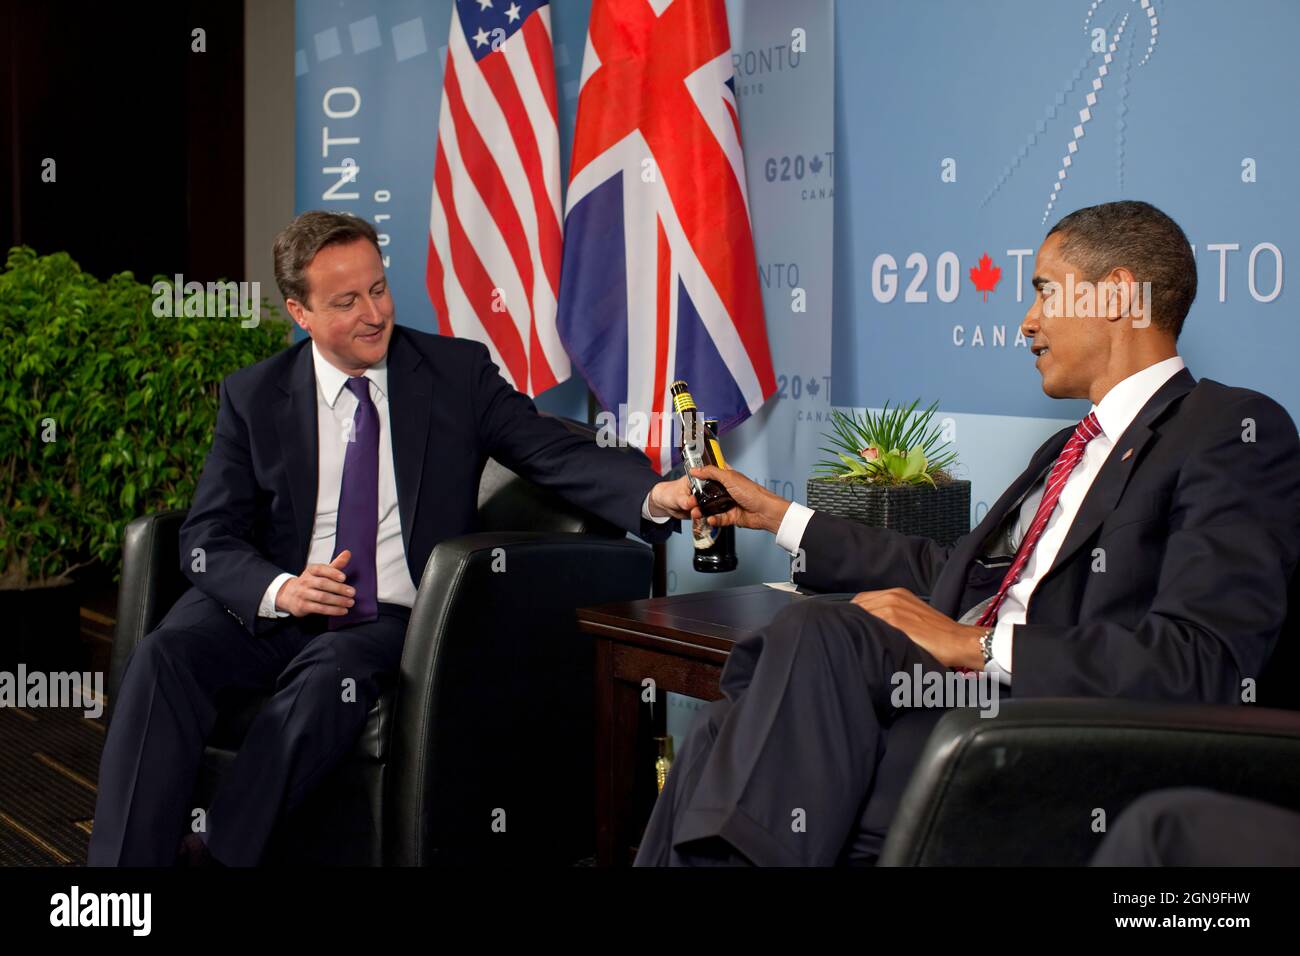 Präsident Barack Obama und der britische Premierminister David Cameron tauschen während eines bilateralen Treffens auf dem G20-Gipfel in Toronto, Kanada, am Samstag, den 26. Juni 2010, Flaschen Bier aus, um ihre Wette auf das Fußballweltcup-Spiel USA gegen Großbritannien zu begleichen. (Offizielles Foto des Weißen Hauses von Pete Souza) Dieses offizielle Foto des Weißen Hauses wird nur zur Veröffentlichung durch Nachrichtenorganisationen und/oder zum persönlichen Druck durch die Betreffzeile(en) des Fotos zur Verfügung gestellt. Das Foto darf in keiner Weise manipuliert werden und darf nicht in kommerziellen oder politischen Materialien, Werbung oder E-mai verwendet werden Stockfoto